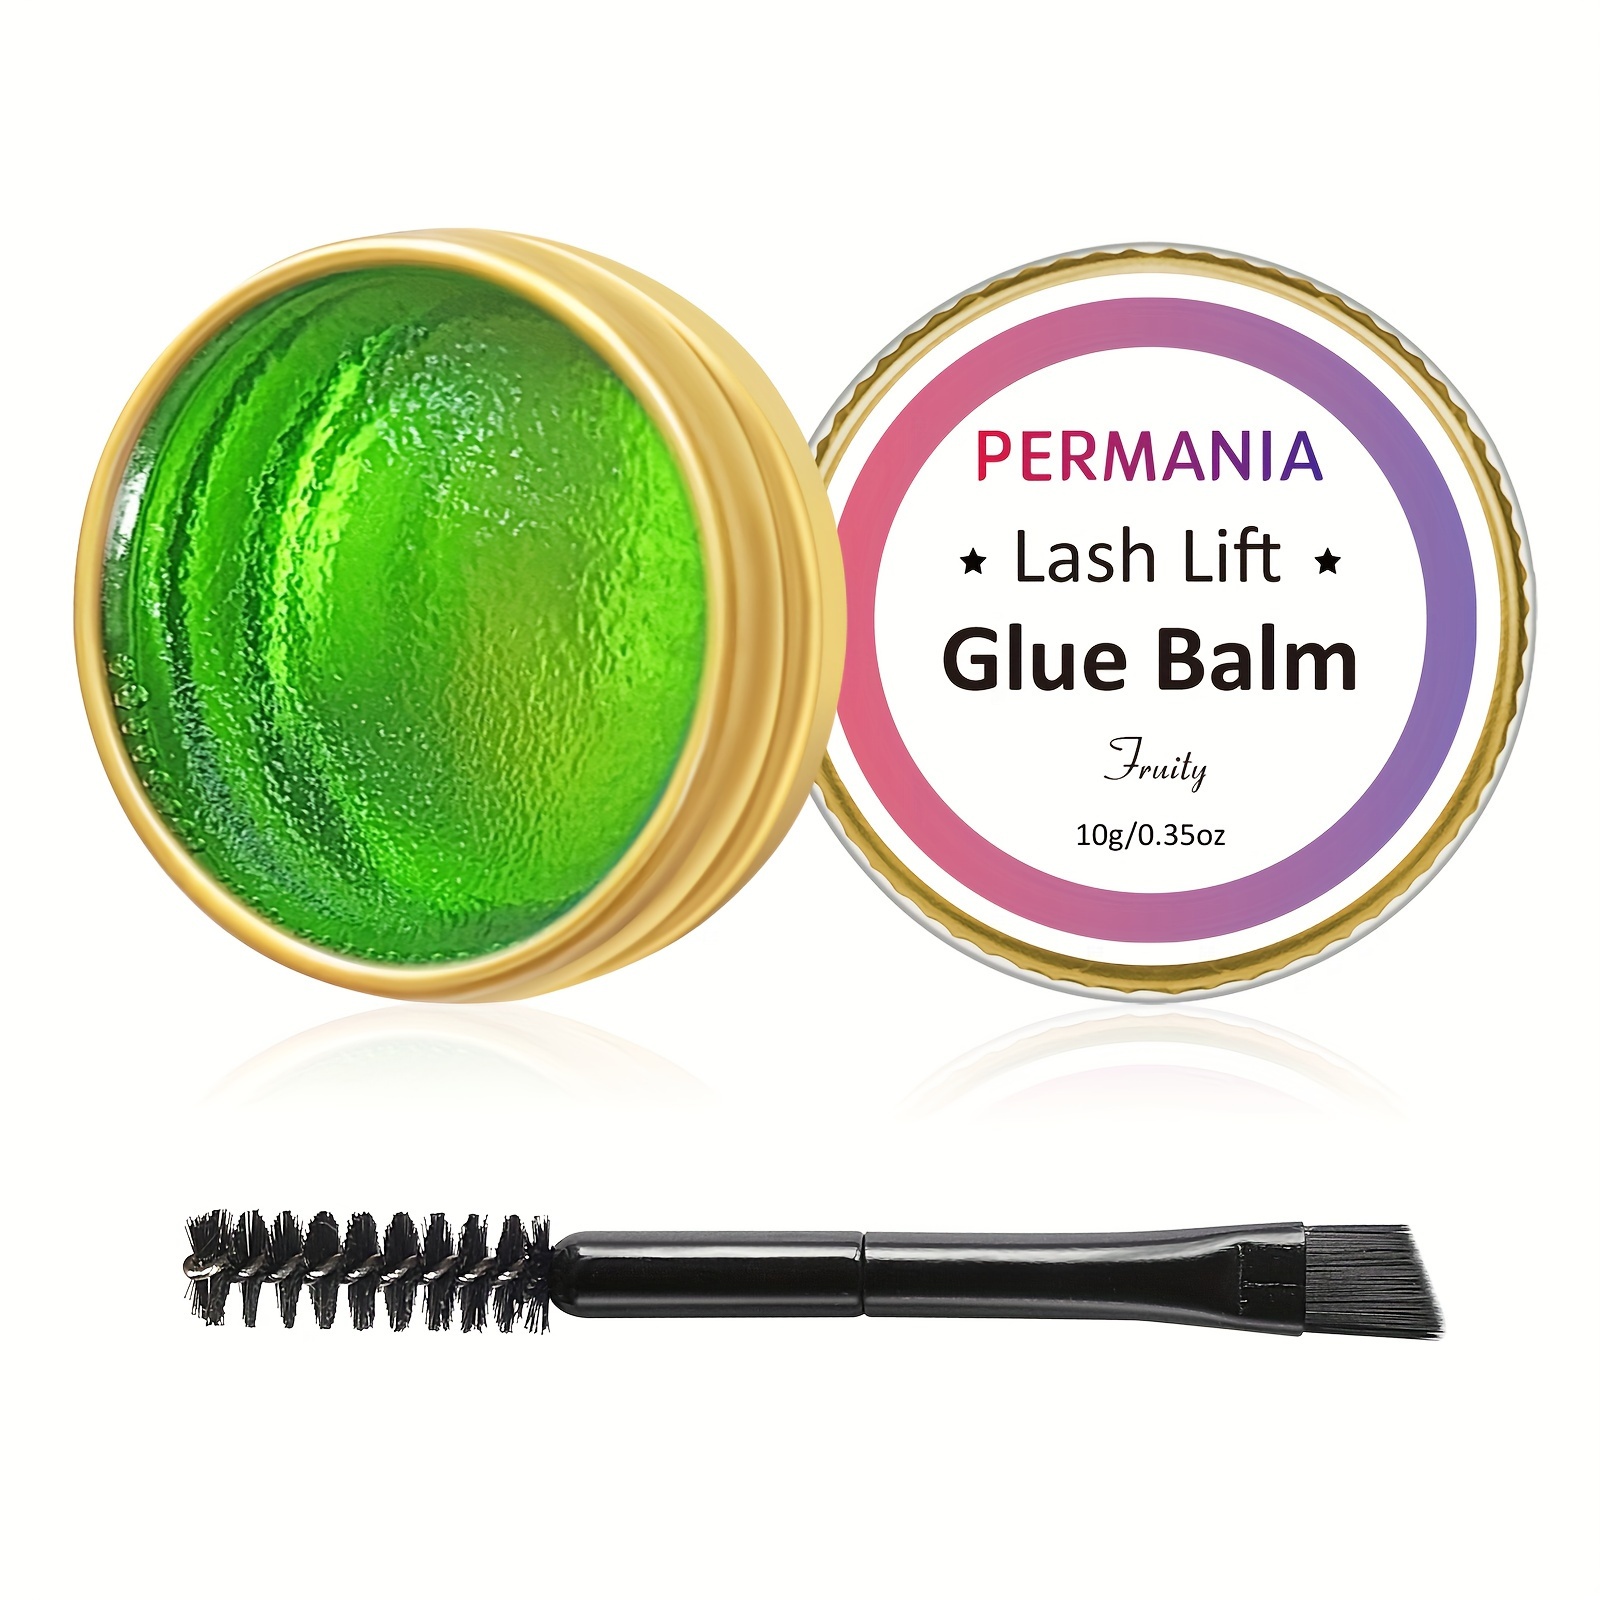 Reutilizáveis Silicone Eye Pads para Lash Lifting, cílios Perming, Lash Lift,  cílios Lift, cílios Extensão, ferramentas de maquiagem, 2 pares - AliExpress